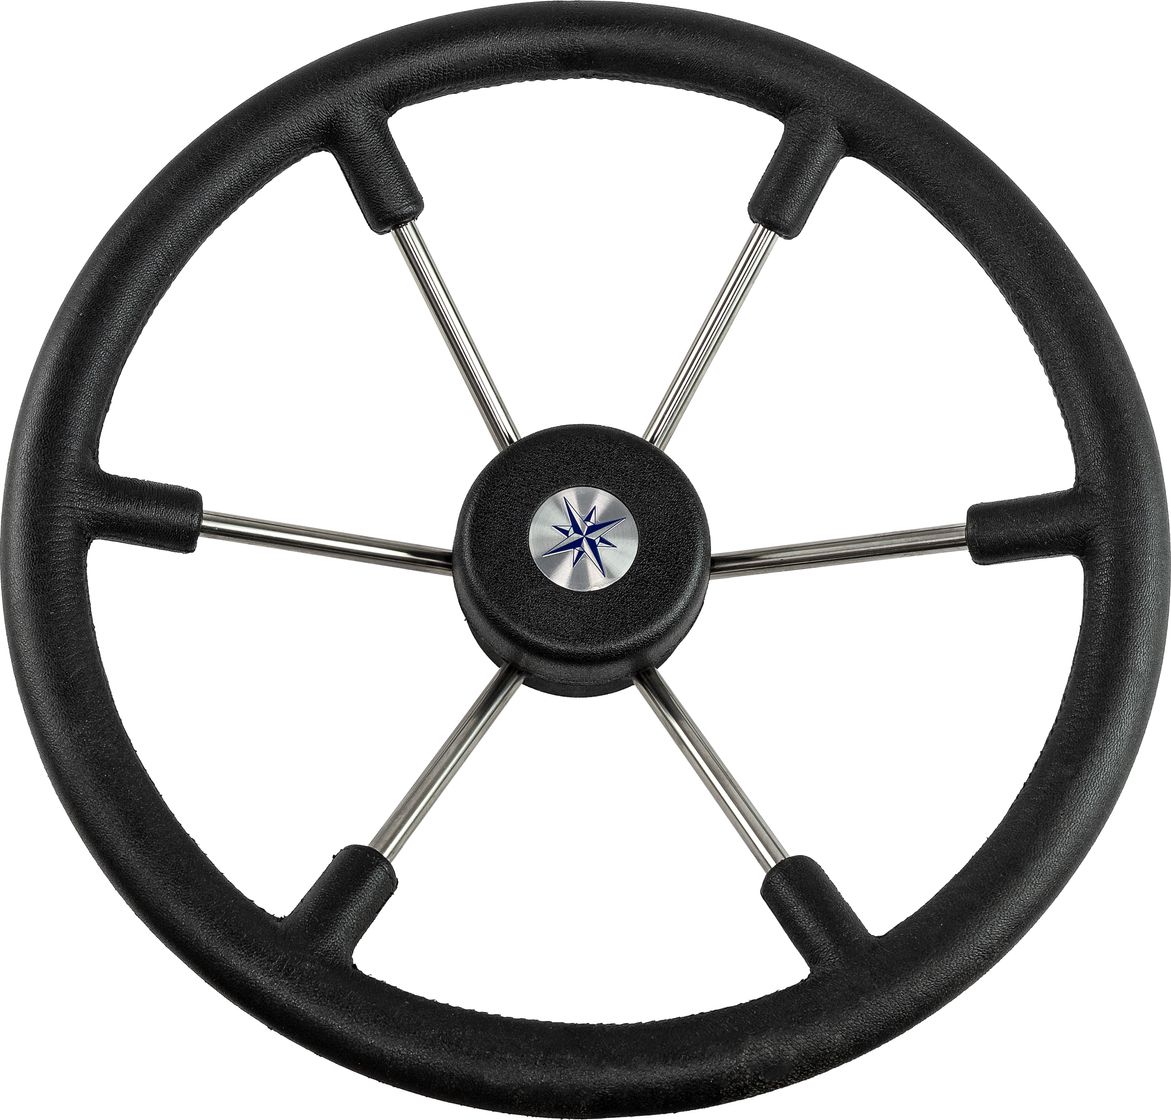 Рулевое колесо LEADER TANEGUM черный обод серебряные спицы д. 400 мм VN7400-01 рулевое колесо leader inox нержавеющий обод серебряные спицы д 320 мм vn7332 22